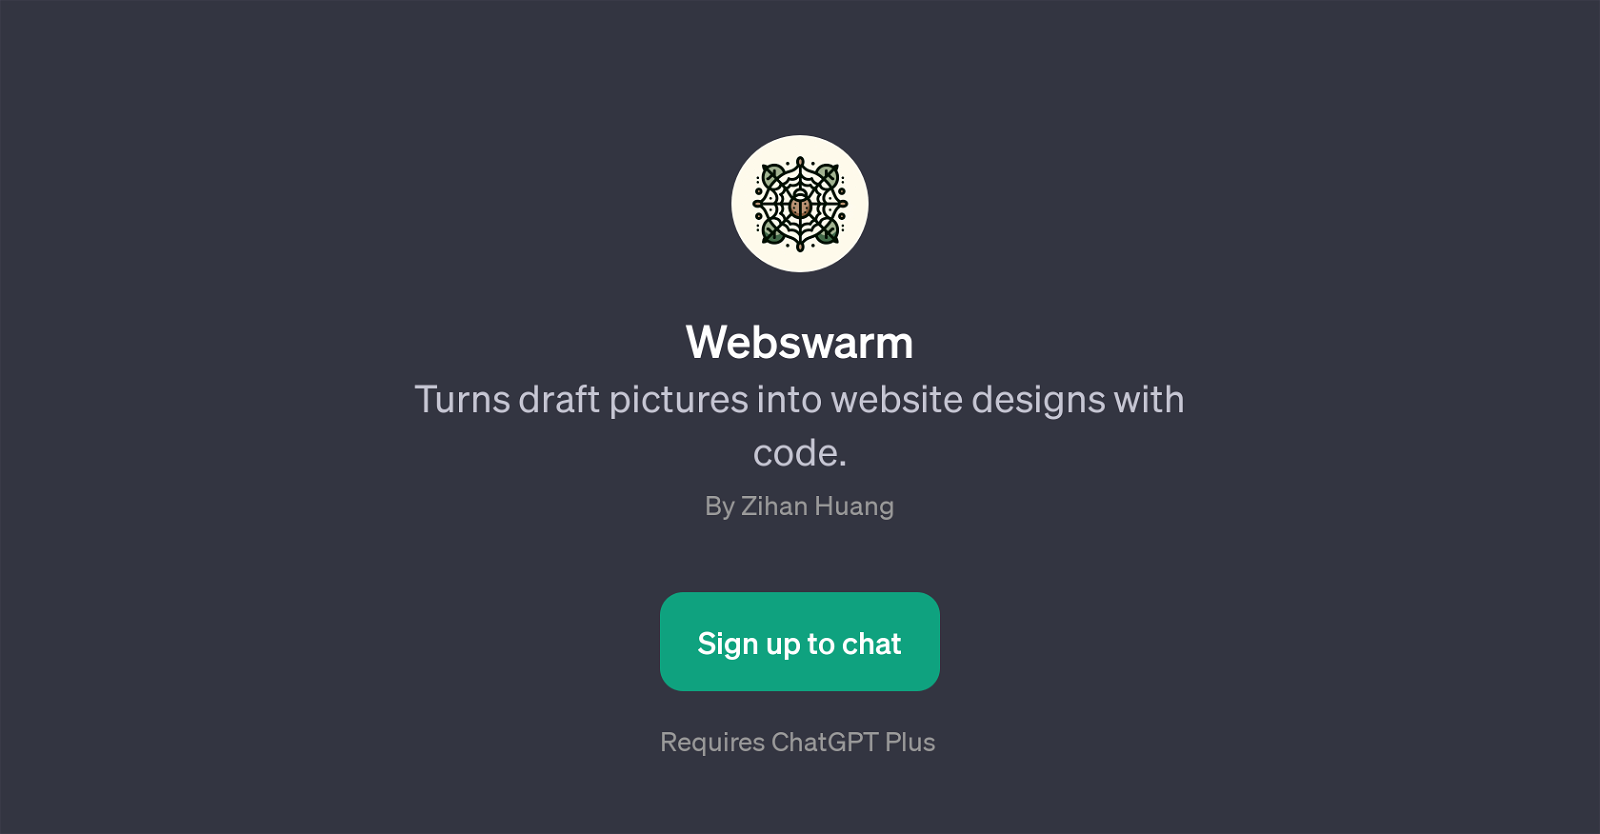 Webswarm website